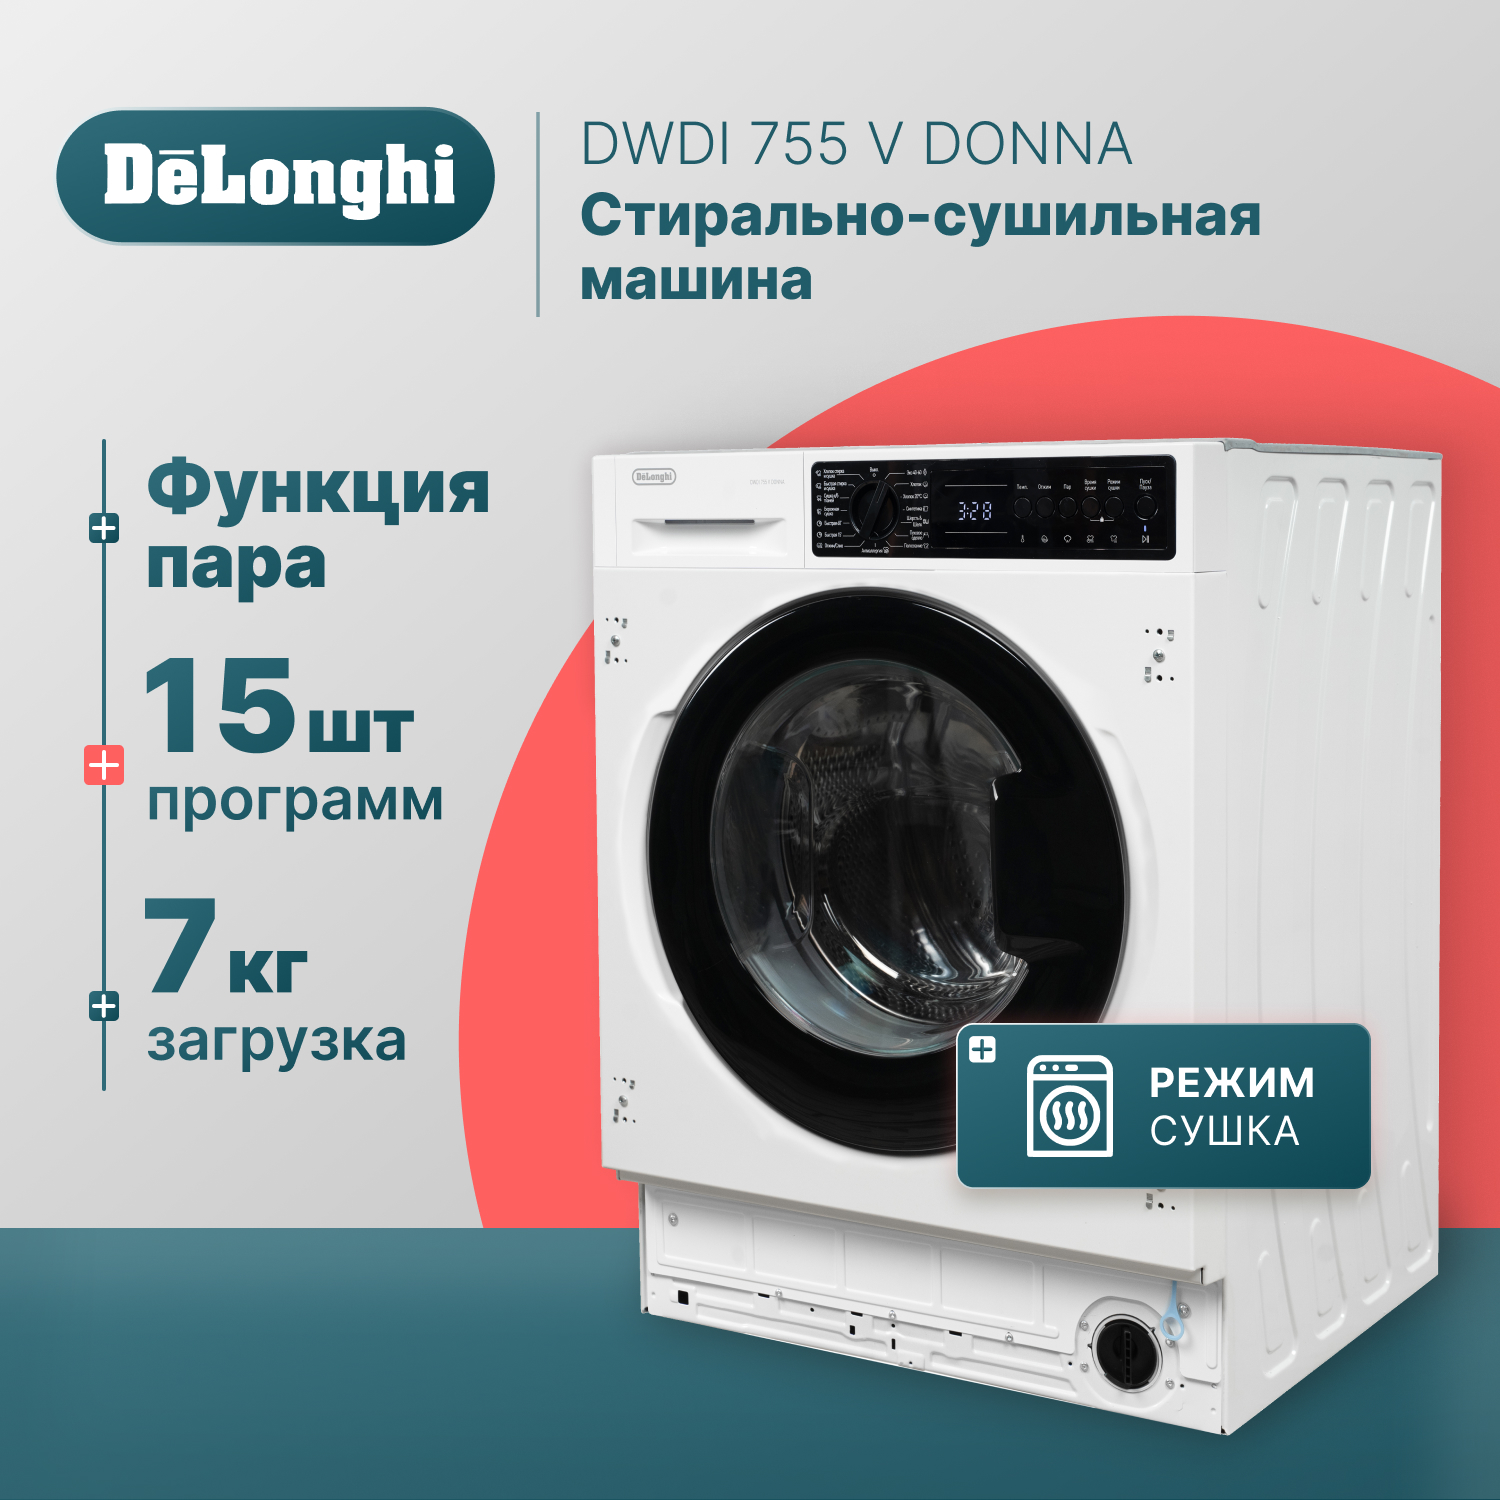 Встраиваемая стиральная машина Delonghi DWDI 755 V DONNA